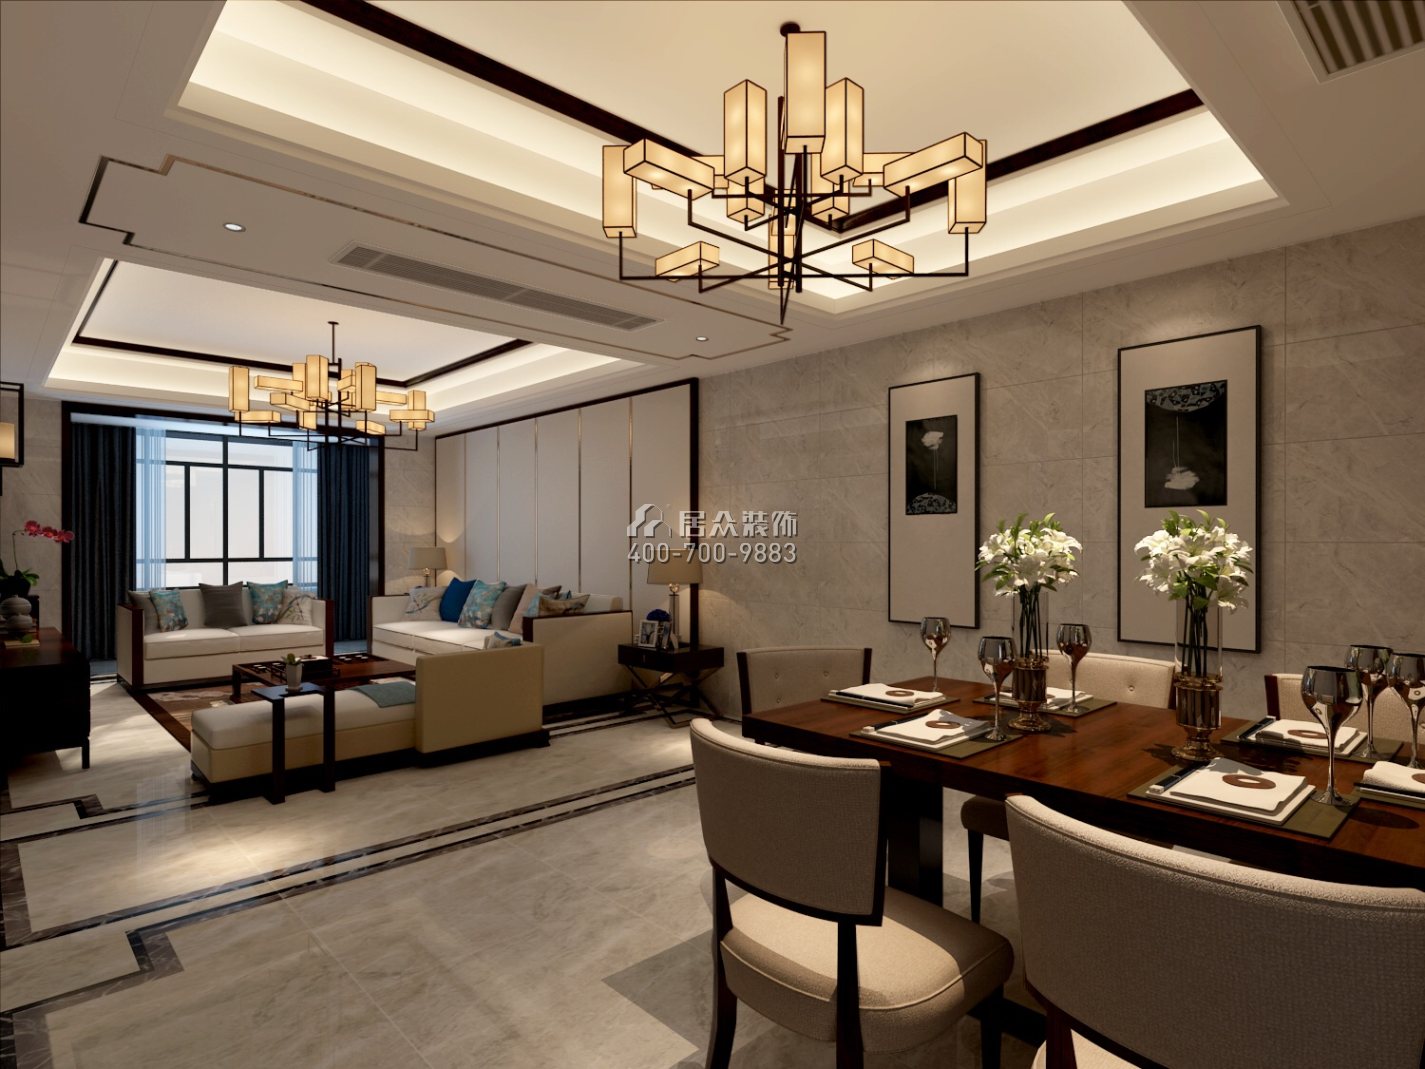 紫御华庭140平方米中式风格平层户型客餐厅一体装修效果图